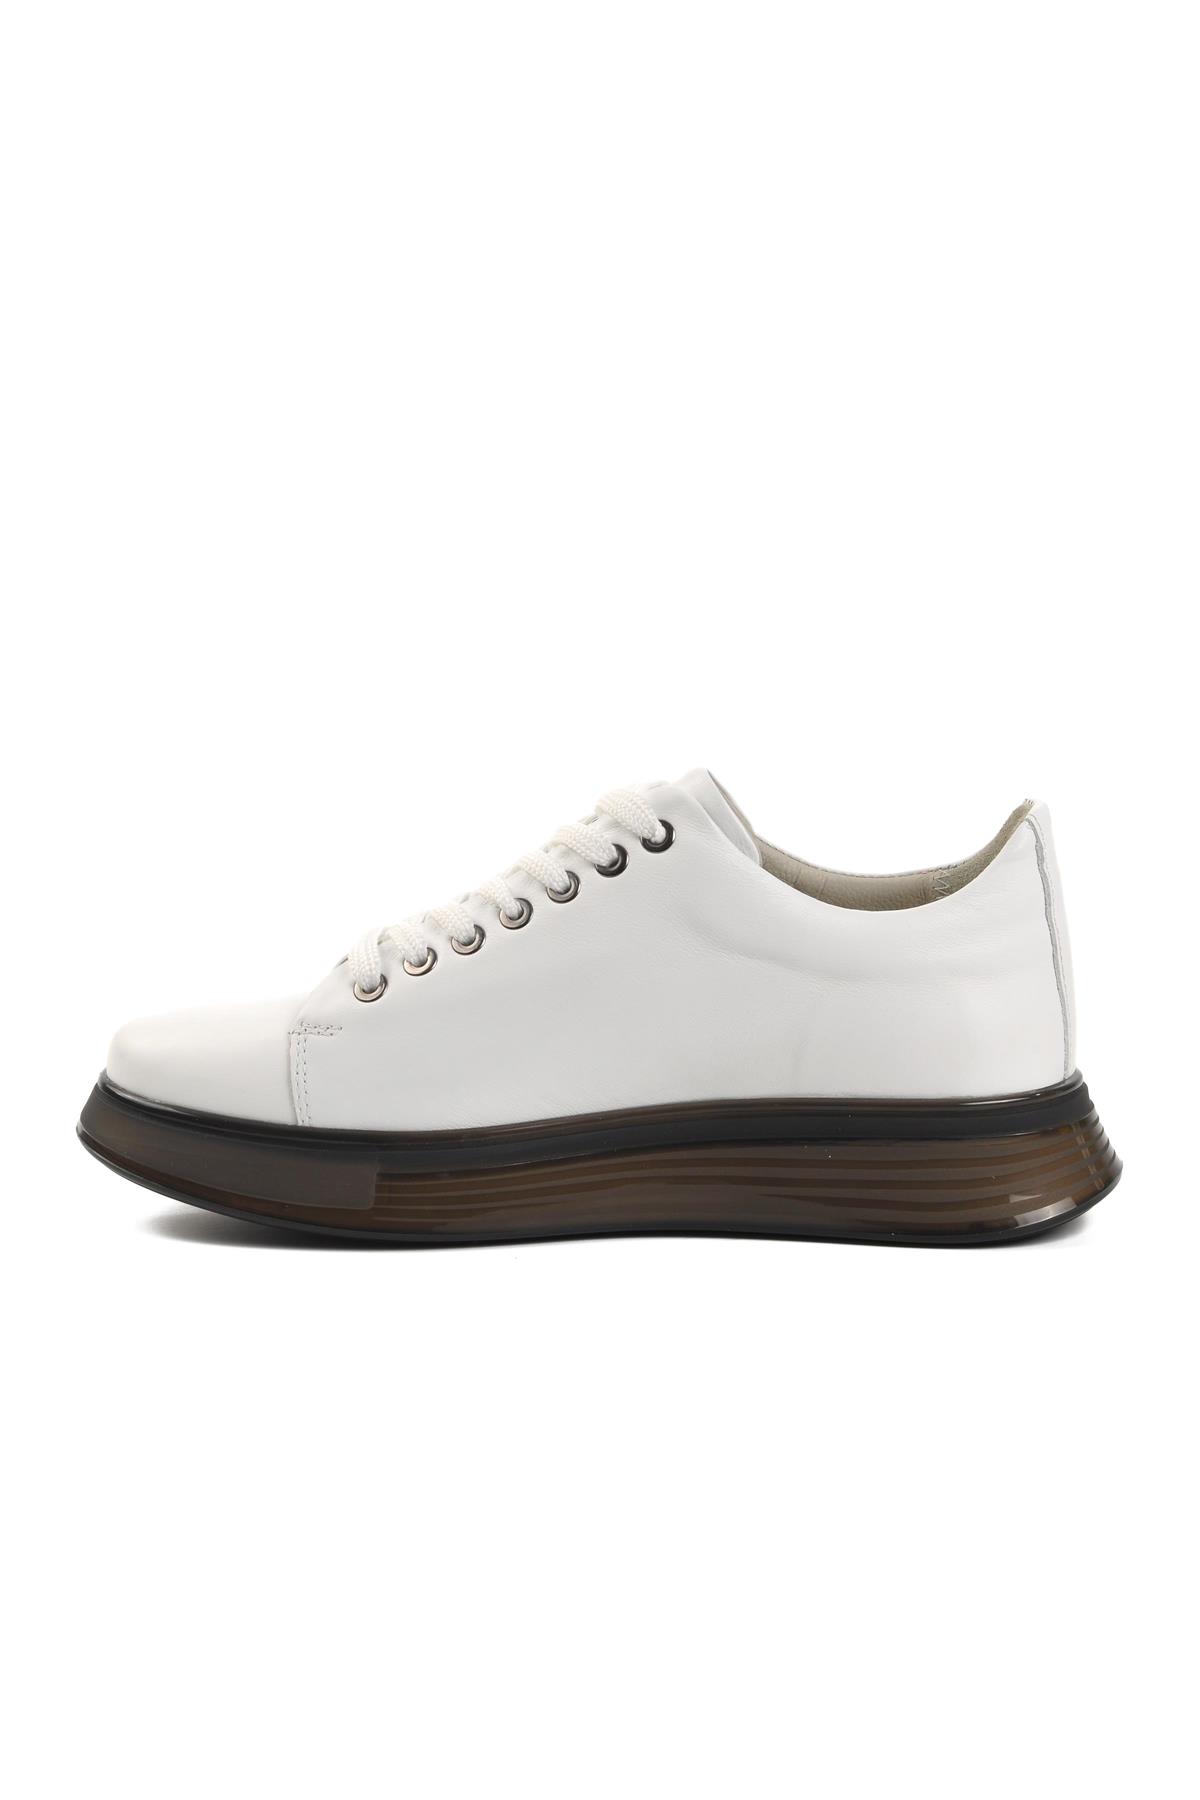 Marcomen 152-15275 Beyaz Hakiki Deri Erkek Casual Ayakkabı MARCOMEN Erkek Günlük Ayakkabı